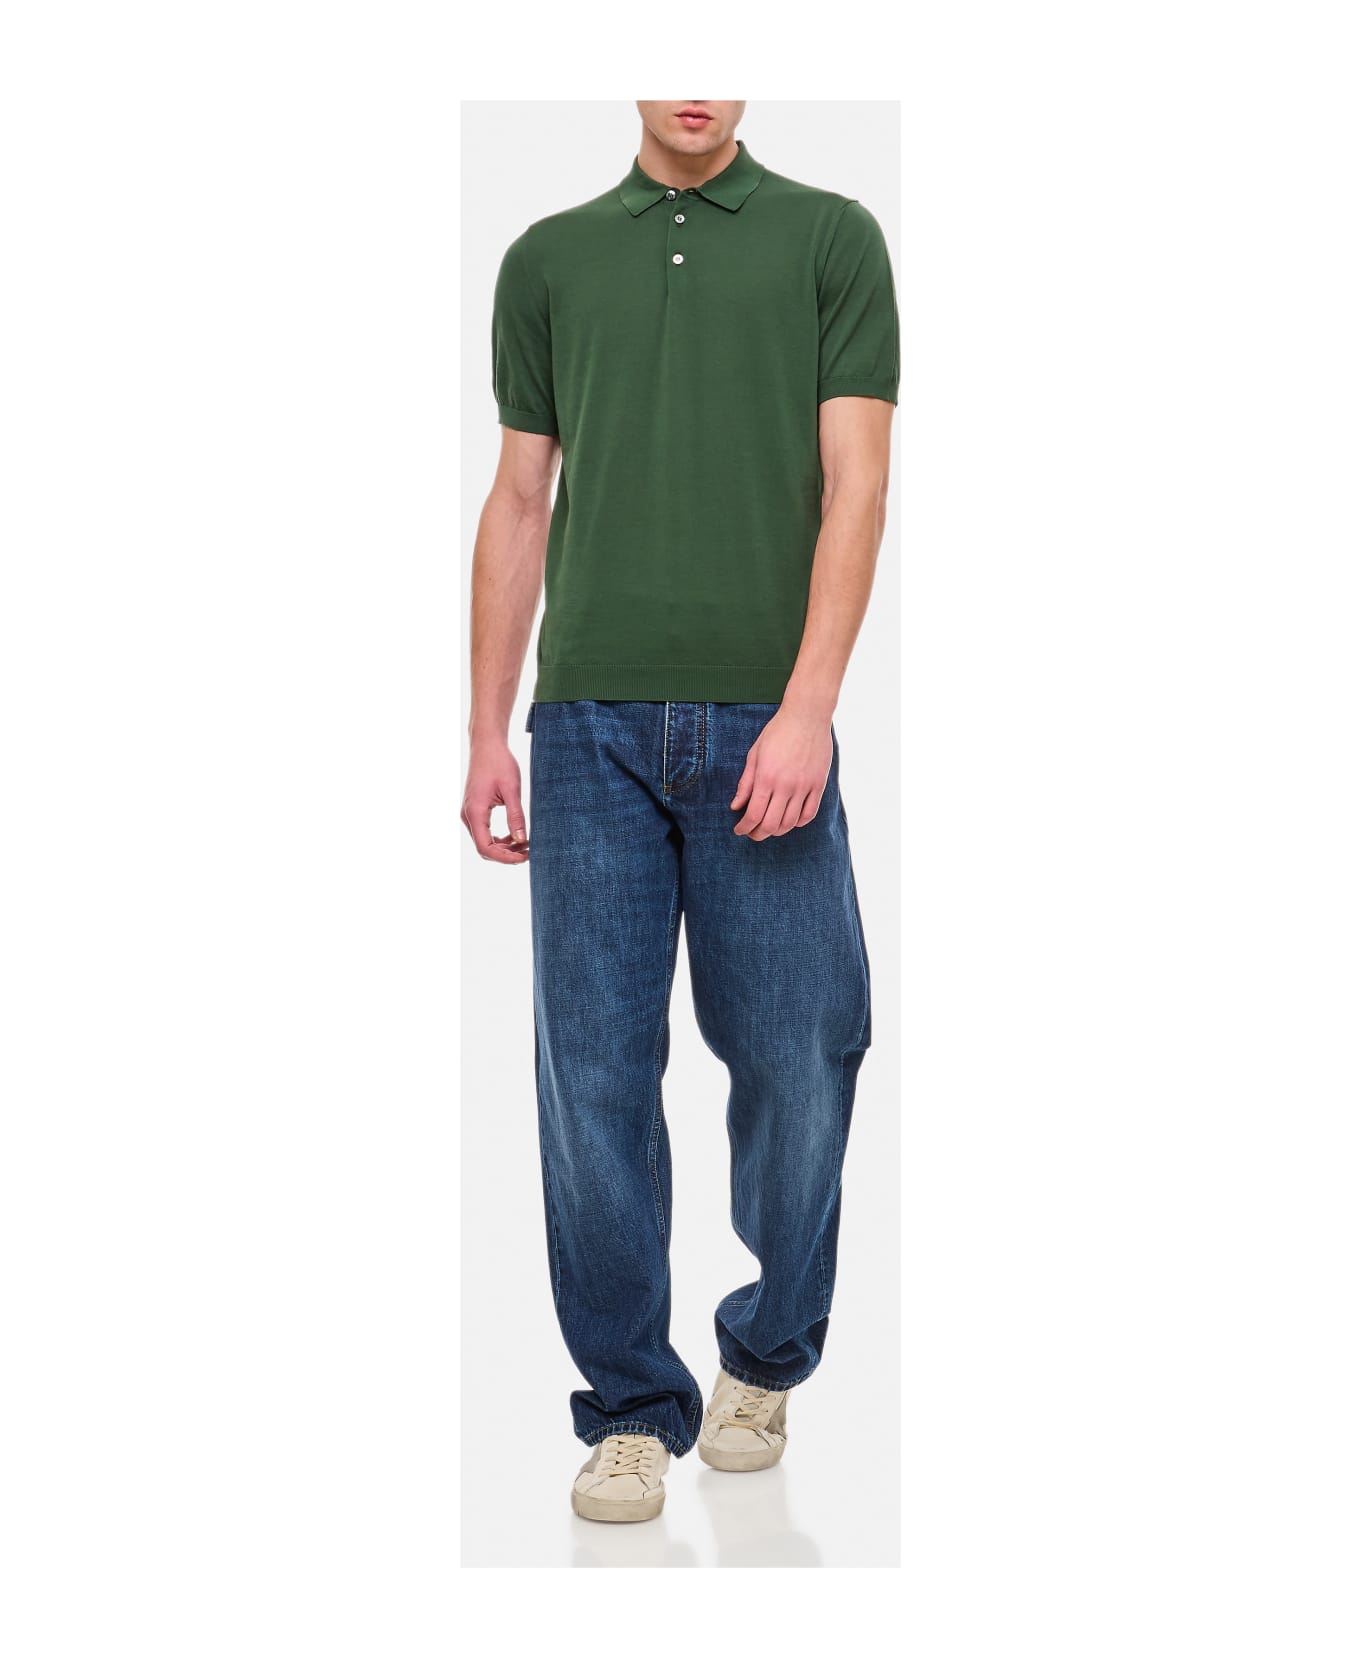 Drumohr Cotton Polo Shirt - Green